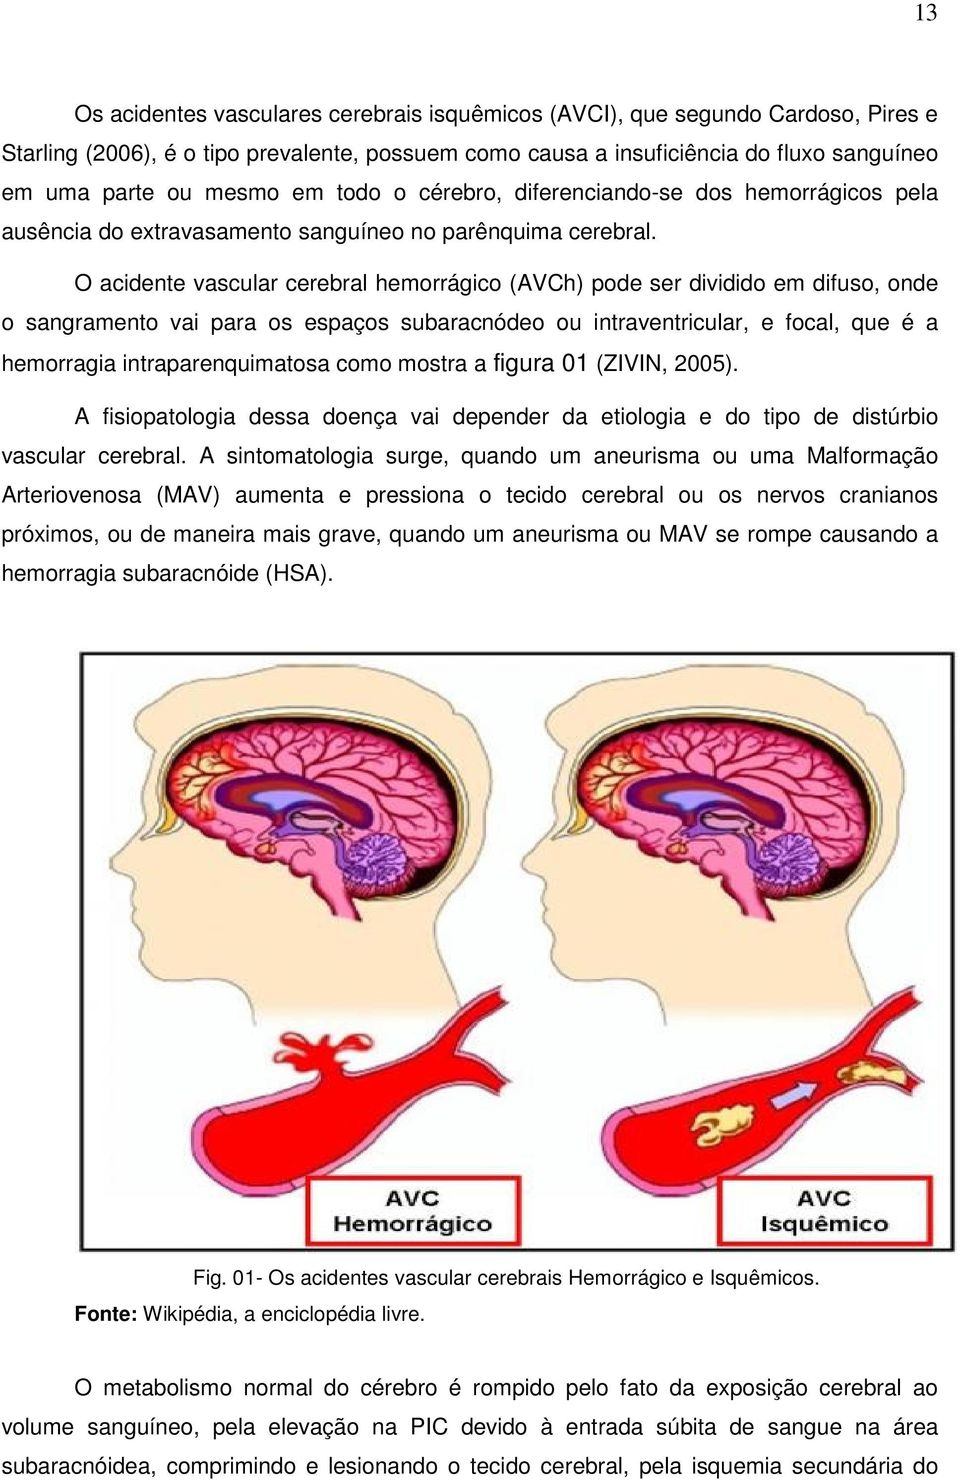 O acidente vascular cerebral hemorrágico (AVCh) pode ser dividido em difuso, onde o sangramento vai para os espaços subaracnódeo ou intraventricular, e focal, que é a hemorragia intraparenquimatosa